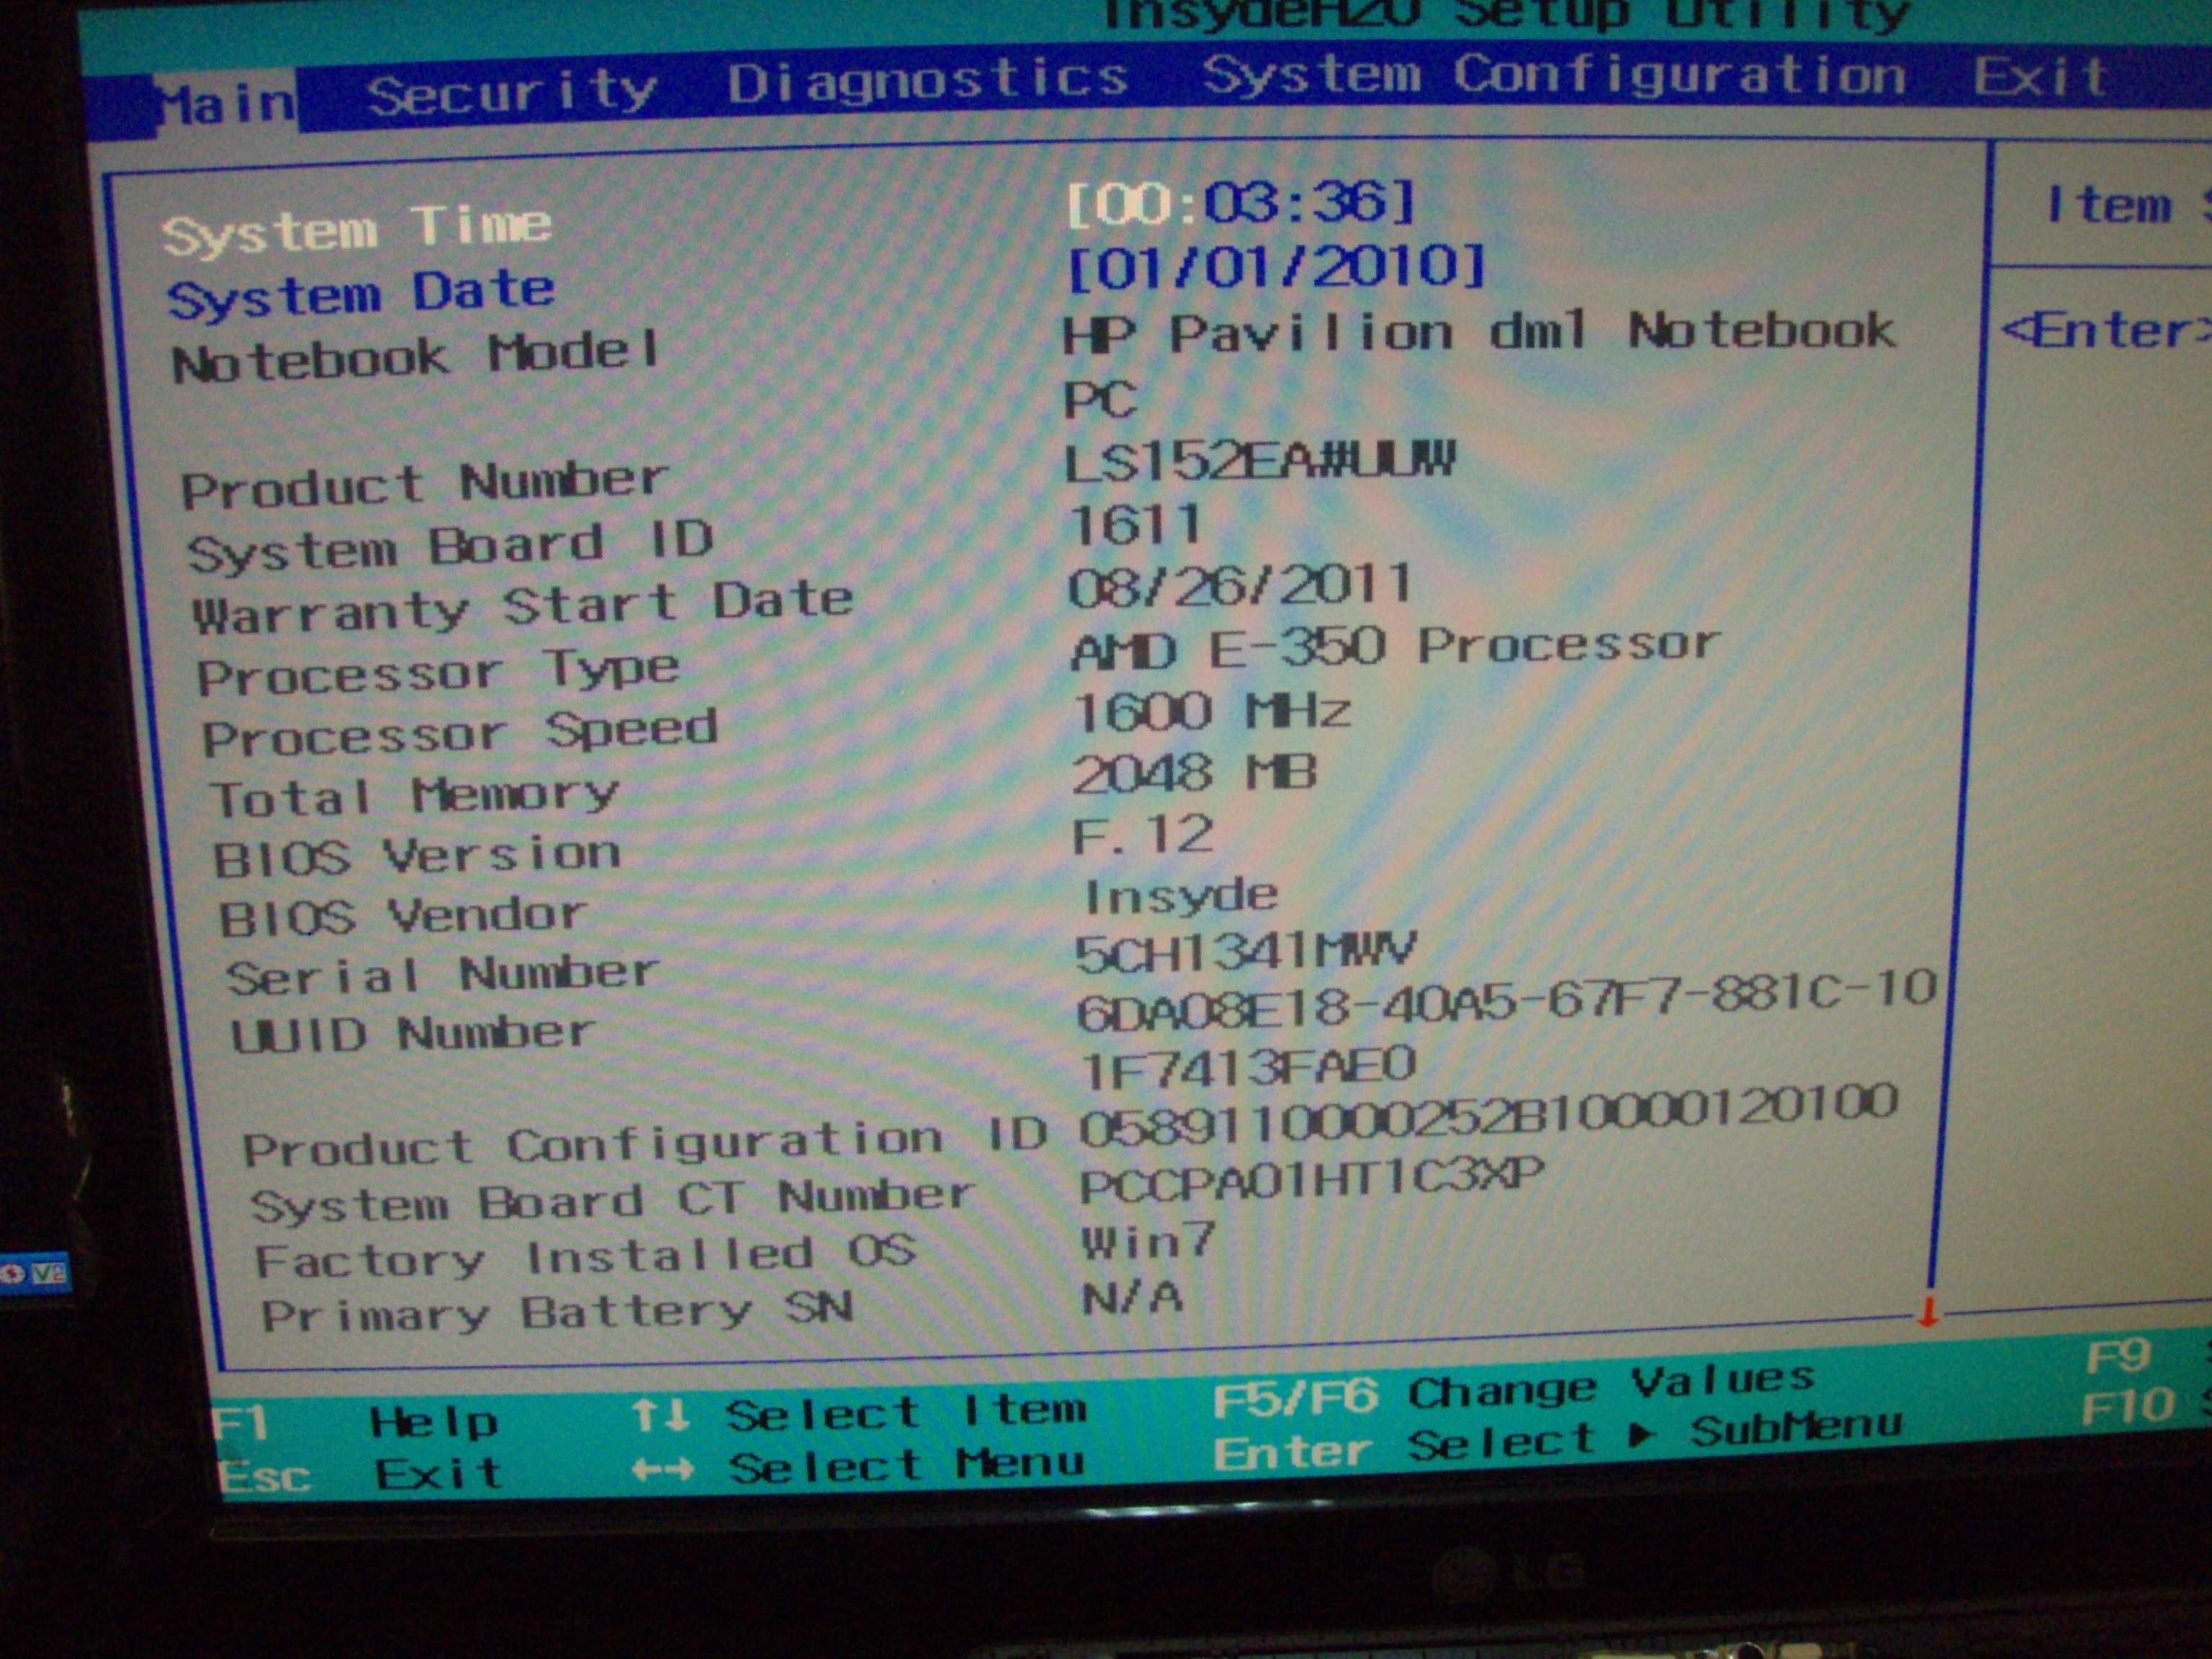 Dezmembrez HP Pavilion DM1 AMD E-350 la 1.6 Ghz